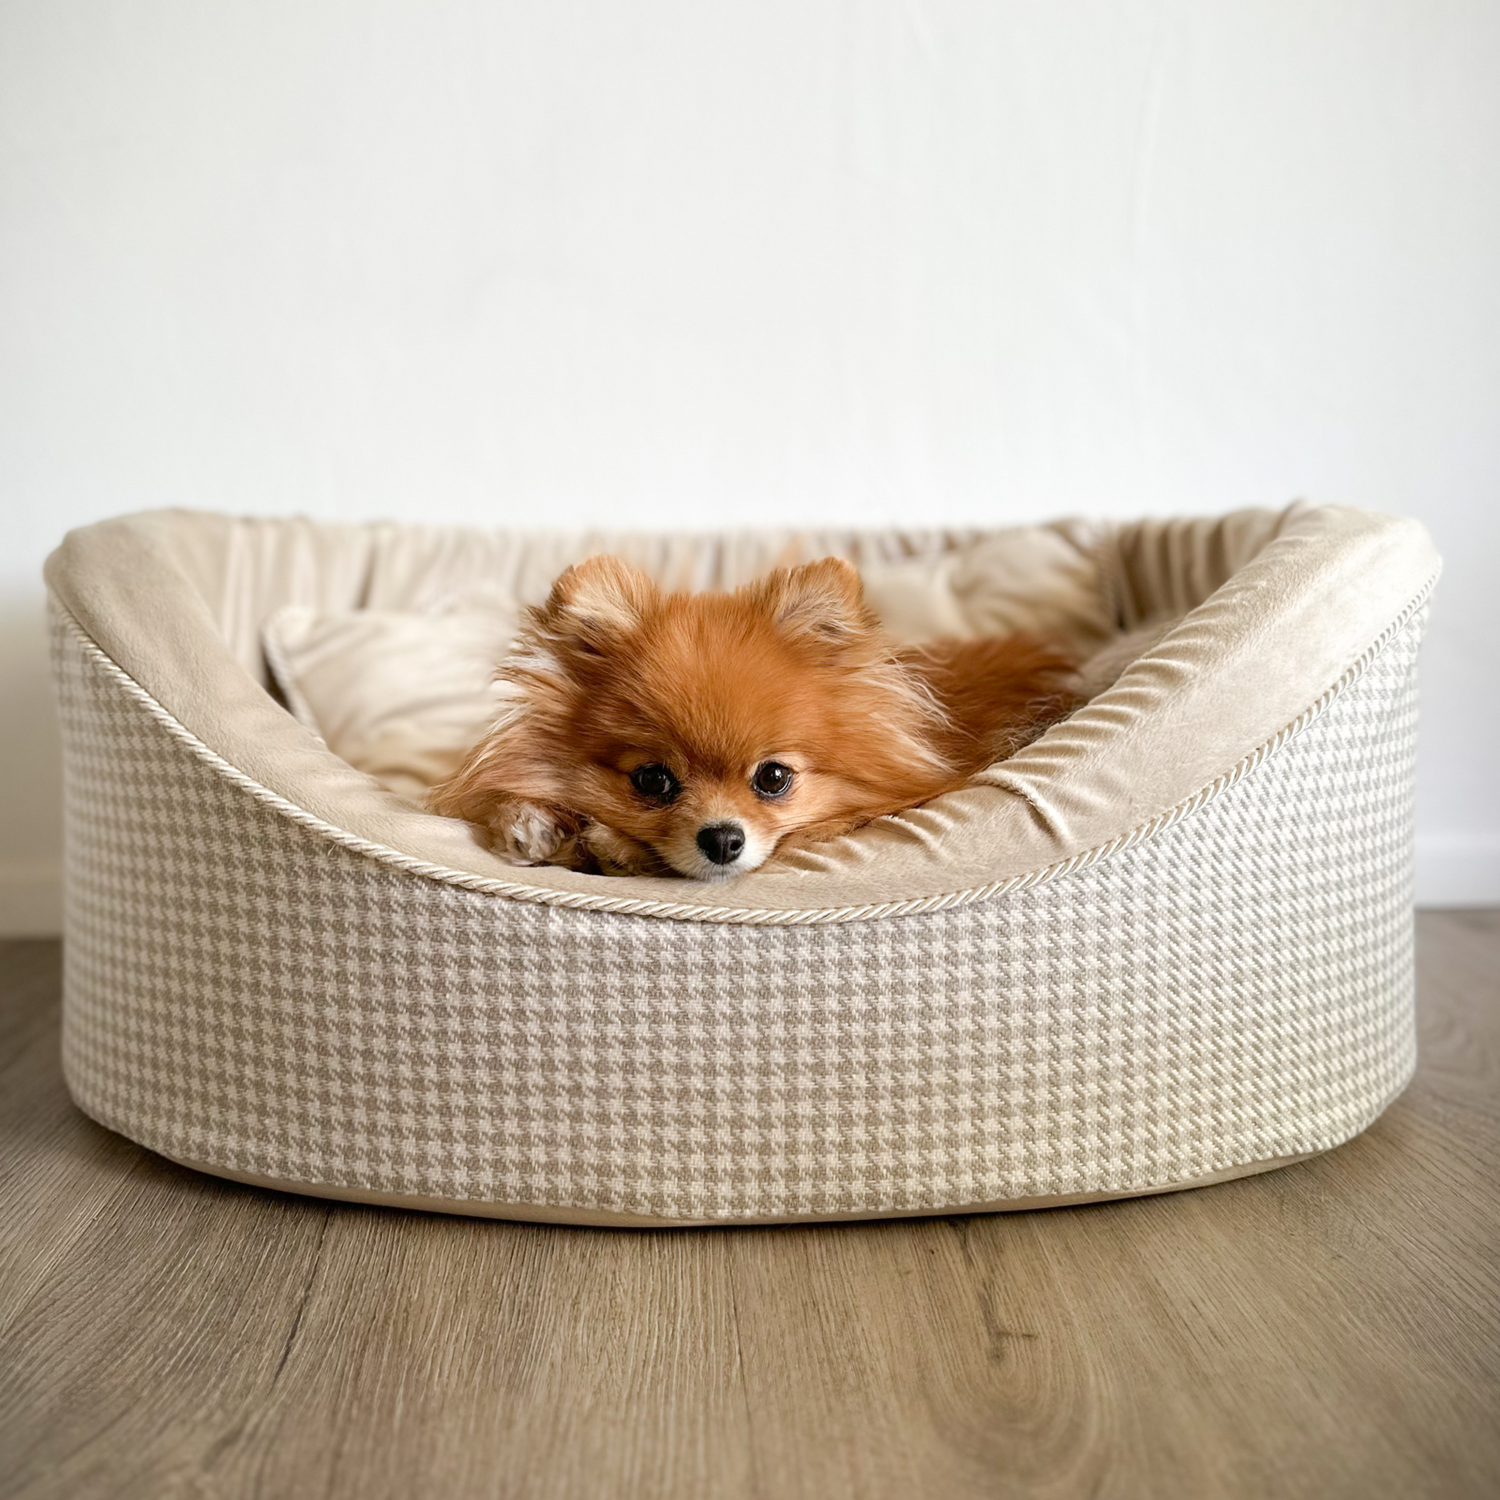 kleiner Hund sitzt in luxus hundebett